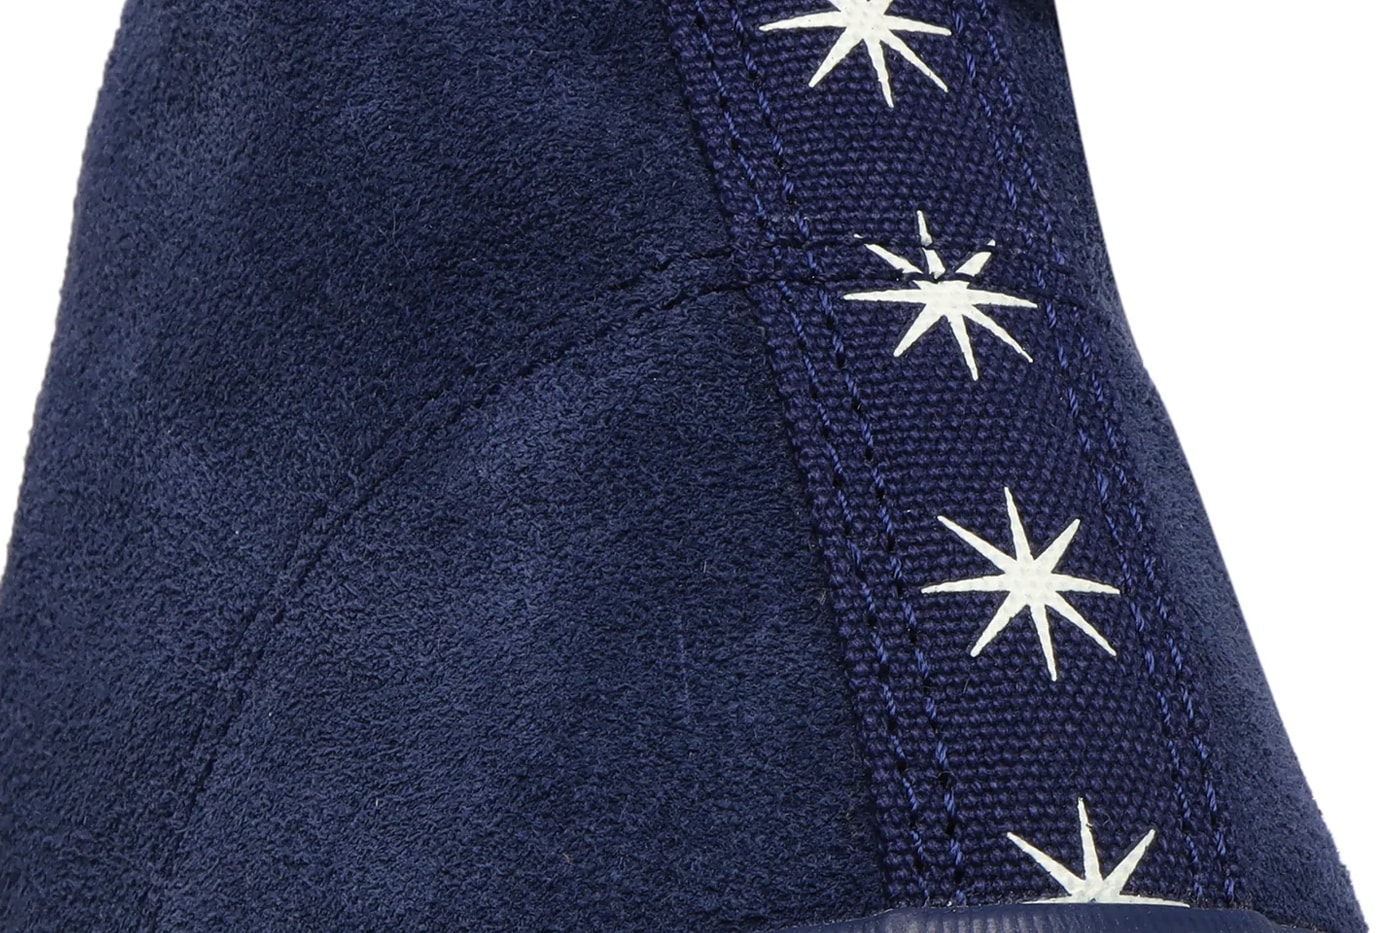 Bott Converse deckstar cx pro sk hi navy white teito sparkle star release info date price